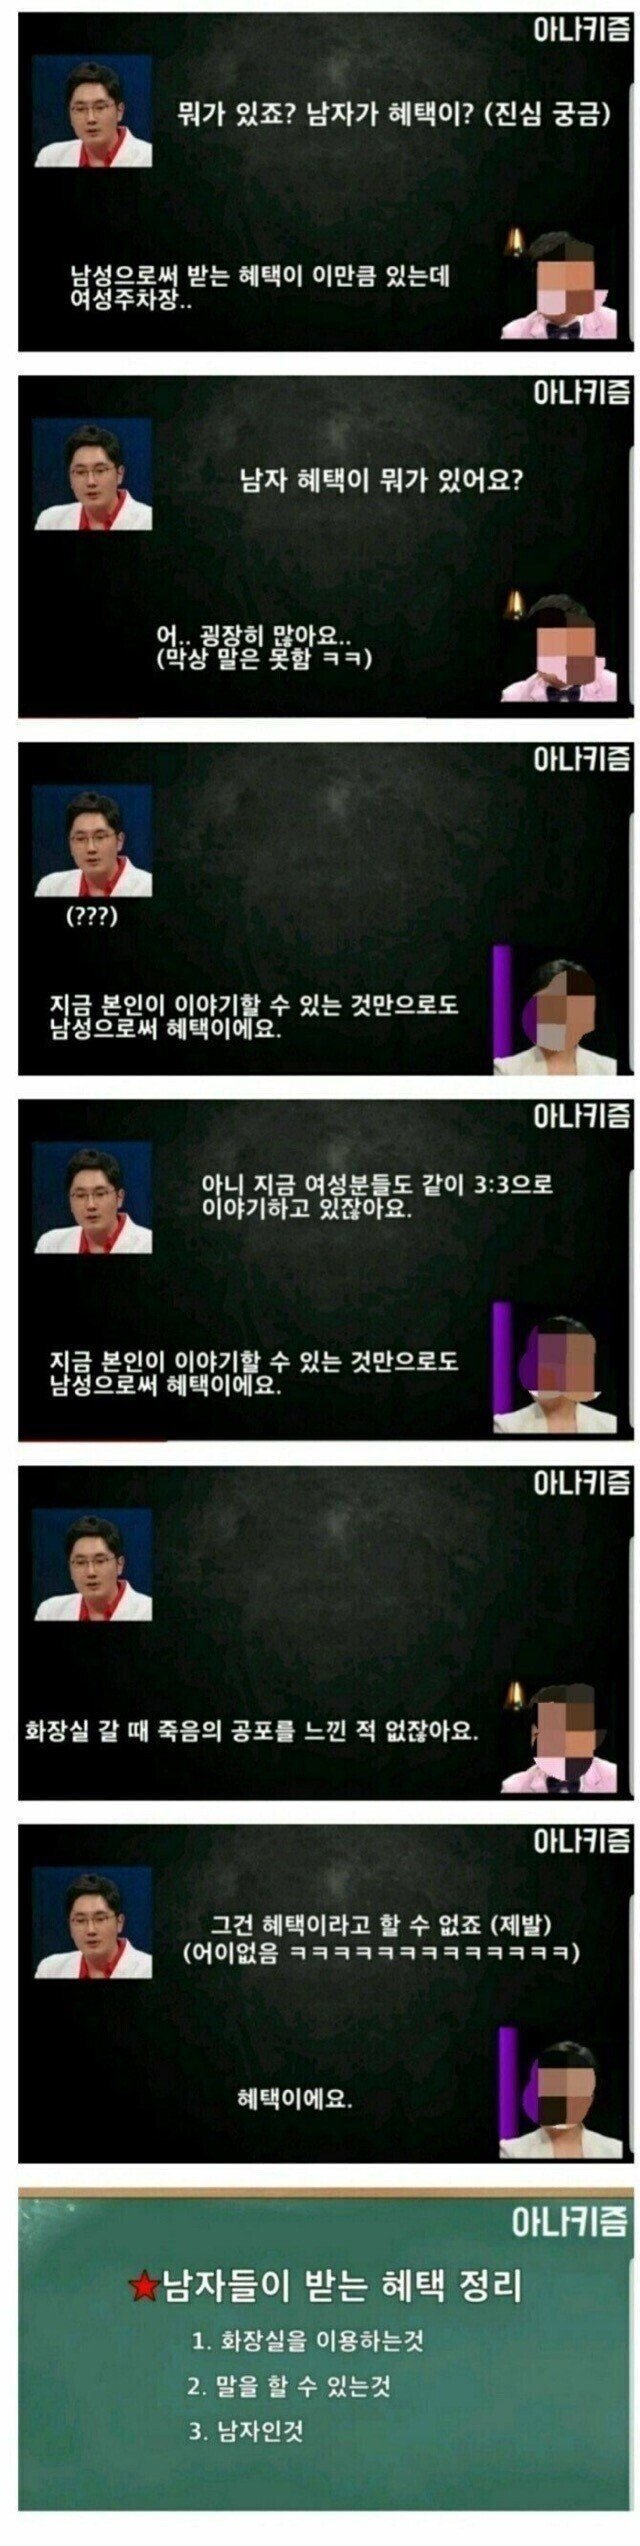 한국에서 남자들이 받는 혜택...JPG